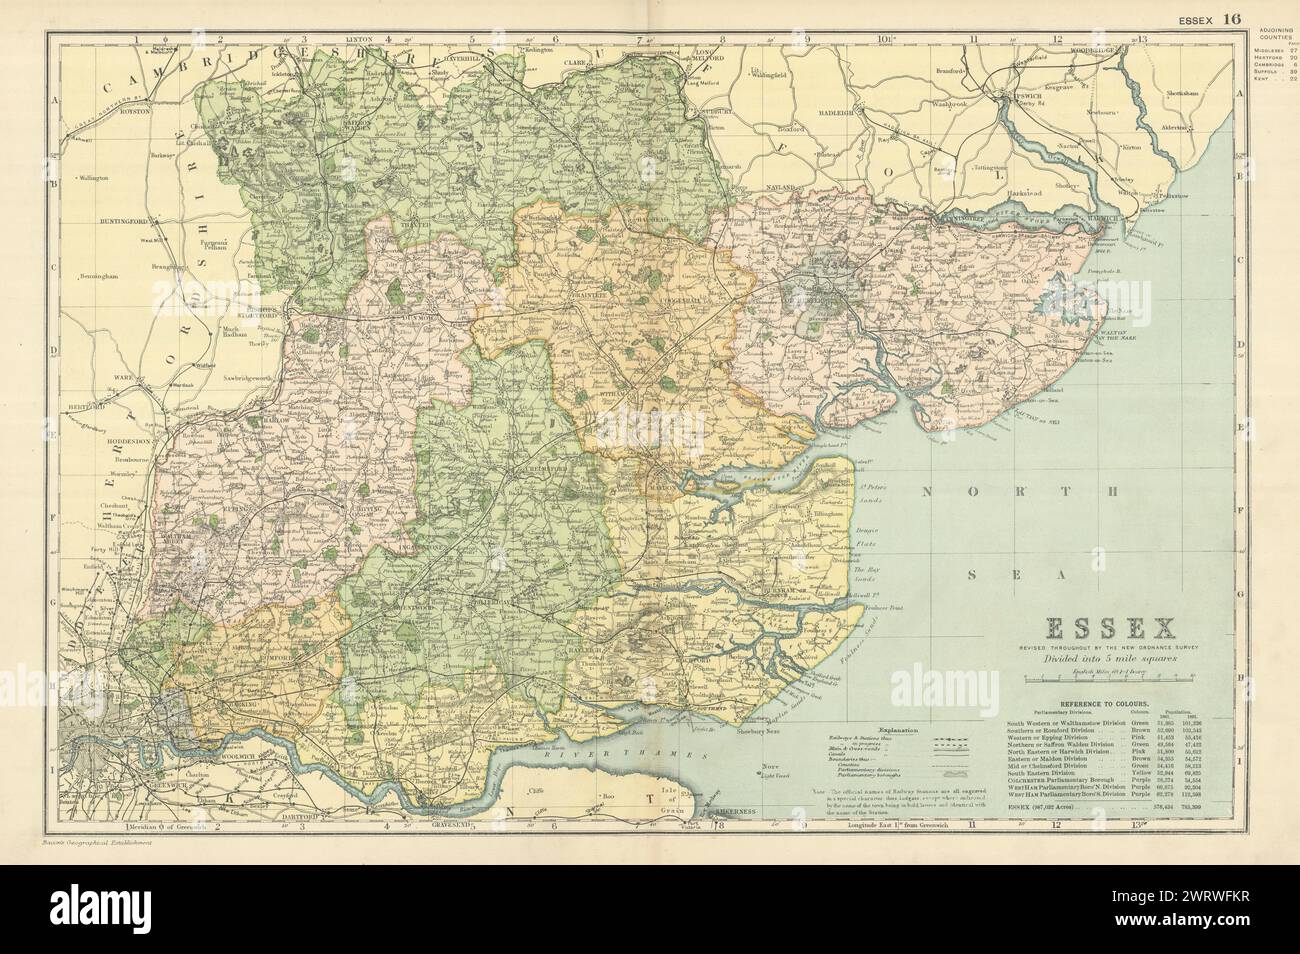 ESSEX antica mappa della contea di GW BACON 1898 vecchia mappa vintage Foto Stock